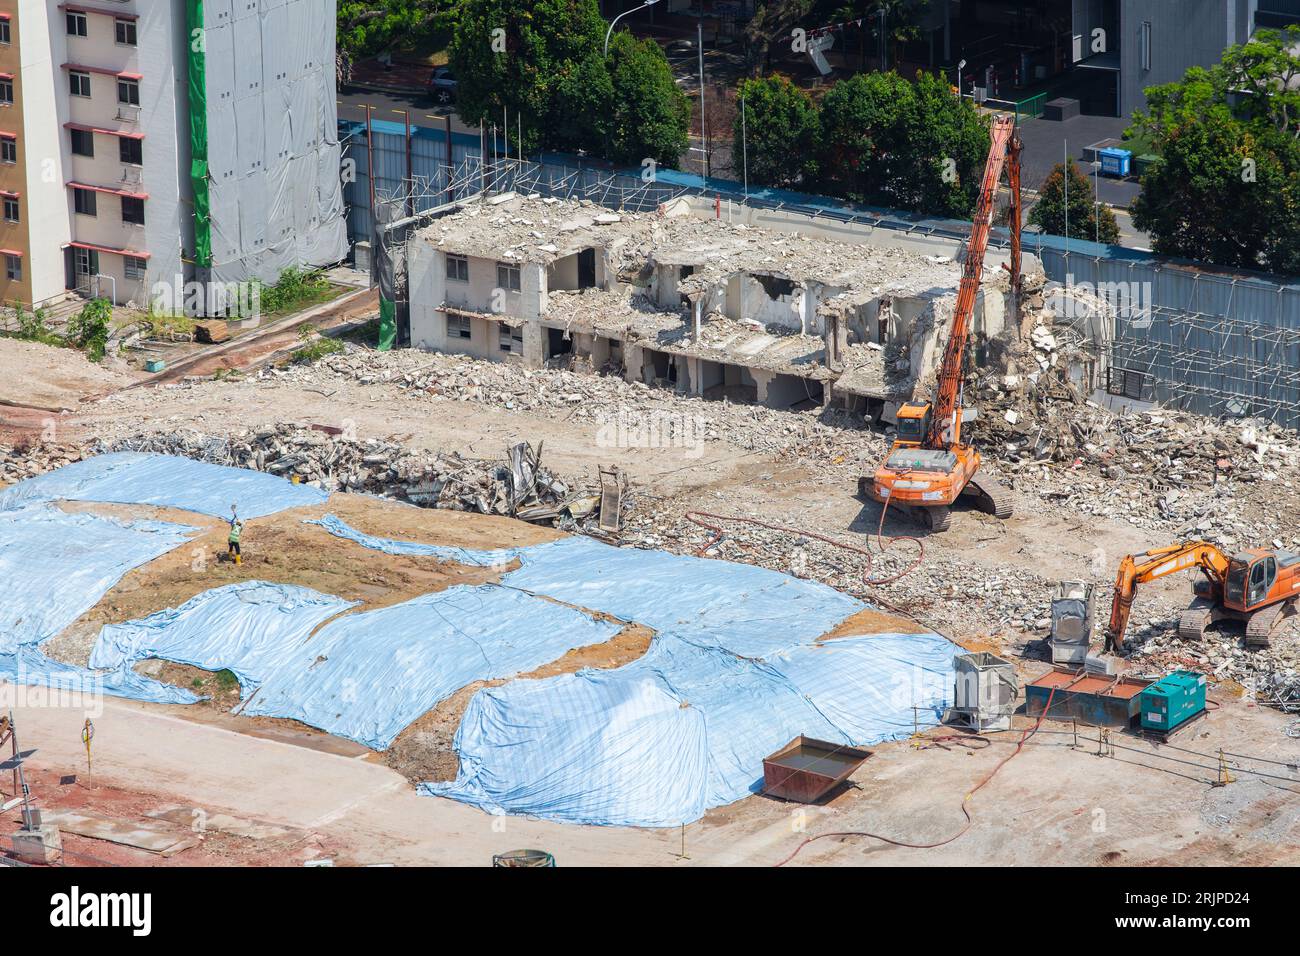 Primo piano del vecchio edificio residenziale pubblico in demolizione a Redhill Close, nuova pianificazione urbana in corso per soddisfare la domanda di alloggi a Singapore. Foto Stock